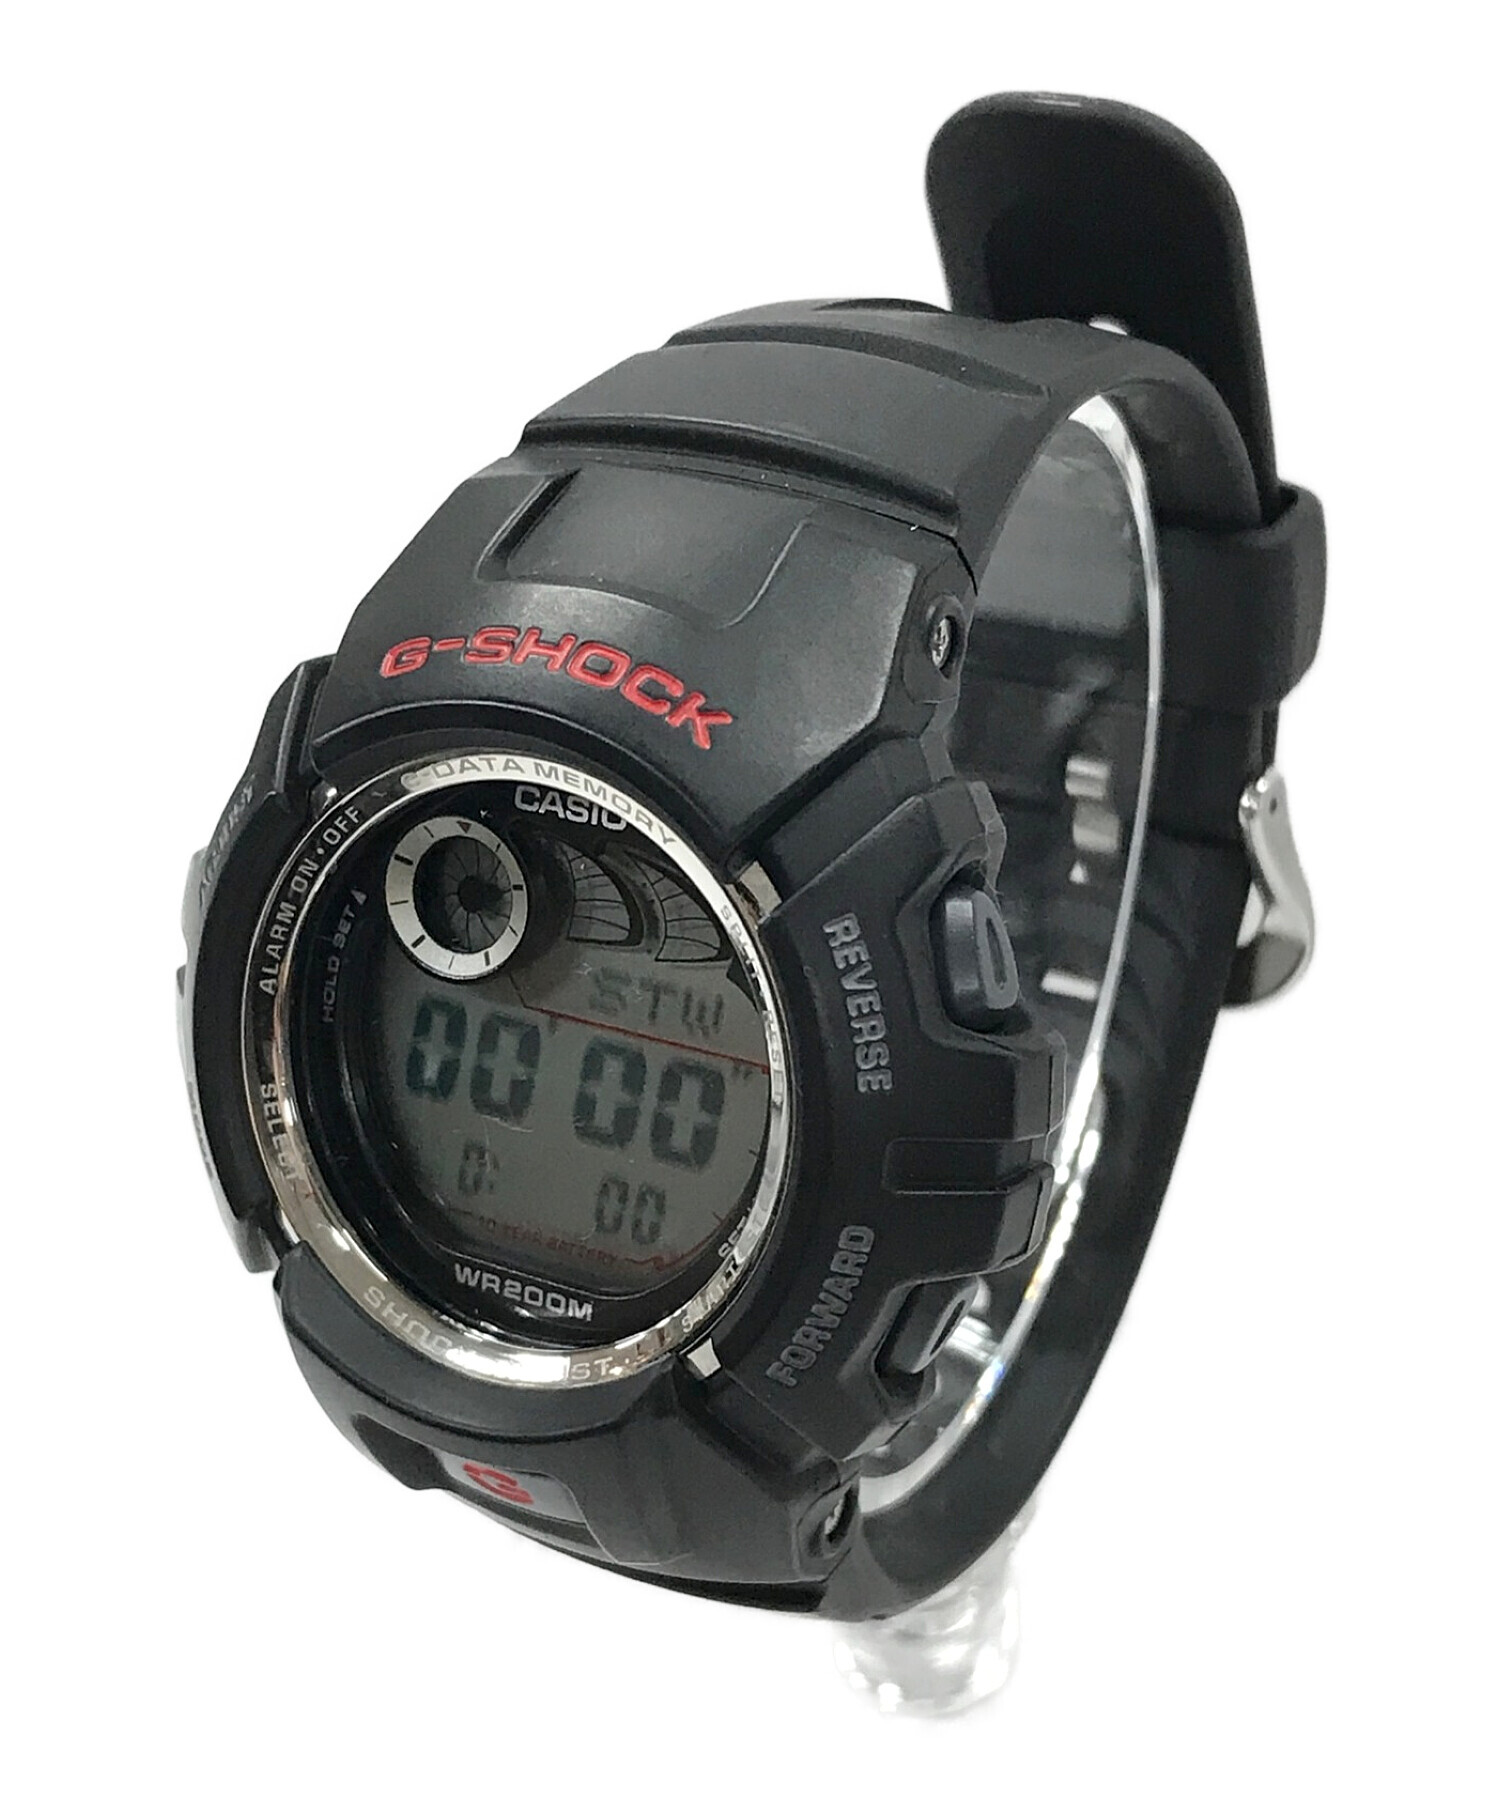 CASIO (カシオ) G-SHOCK 腕時計 ブラック サイズ:実寸サイズにてご確認ください。